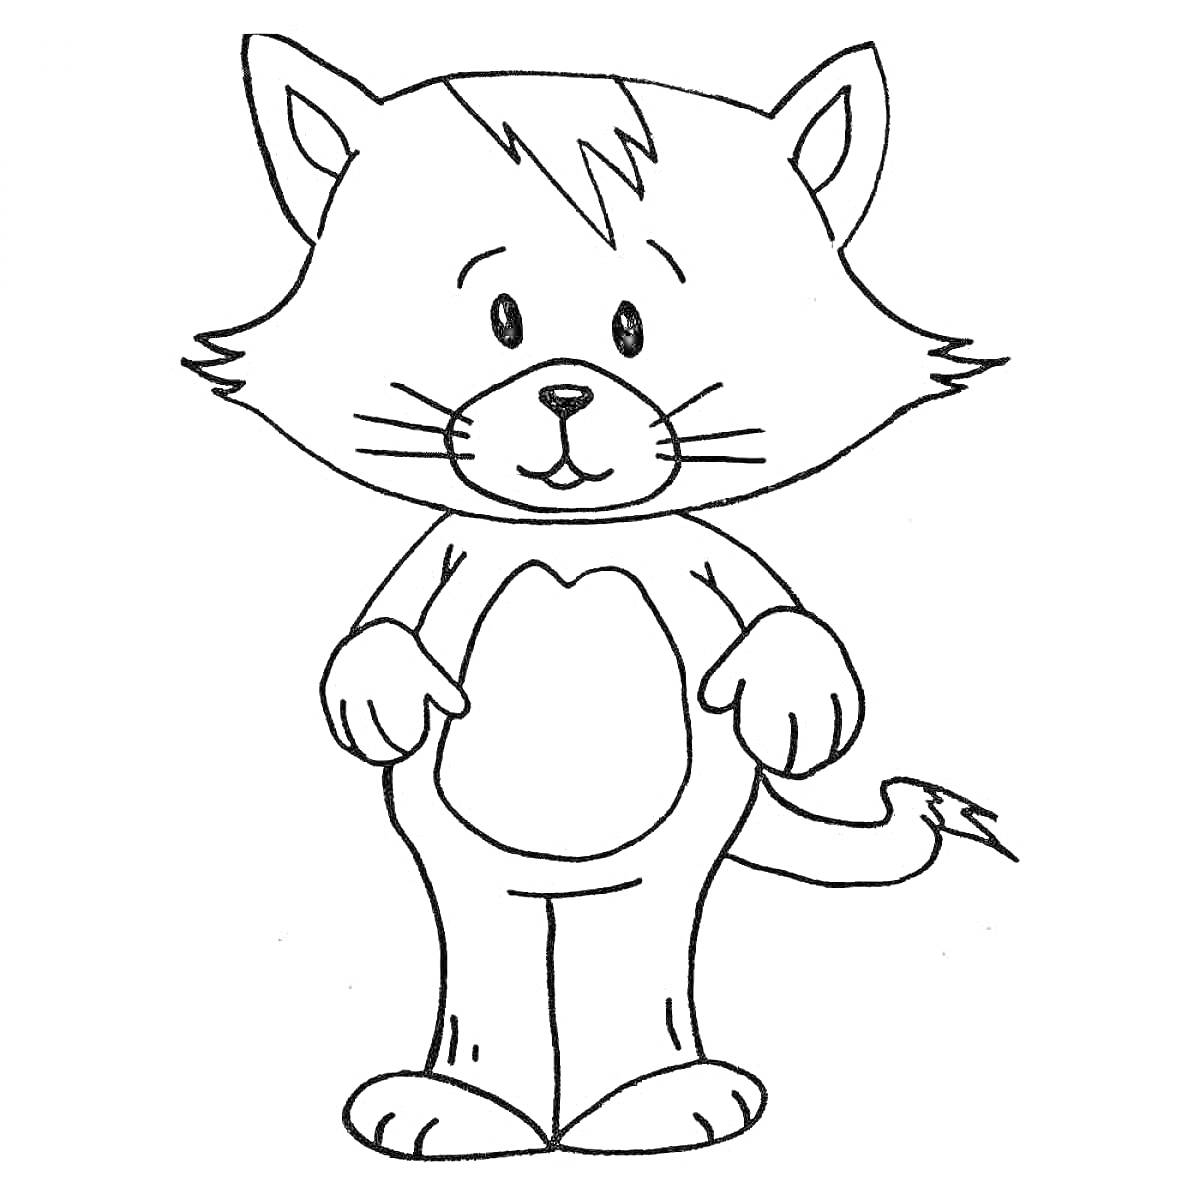 Раскраска Кот стоя прямо с лапками внизу и пучком шерсти на голове